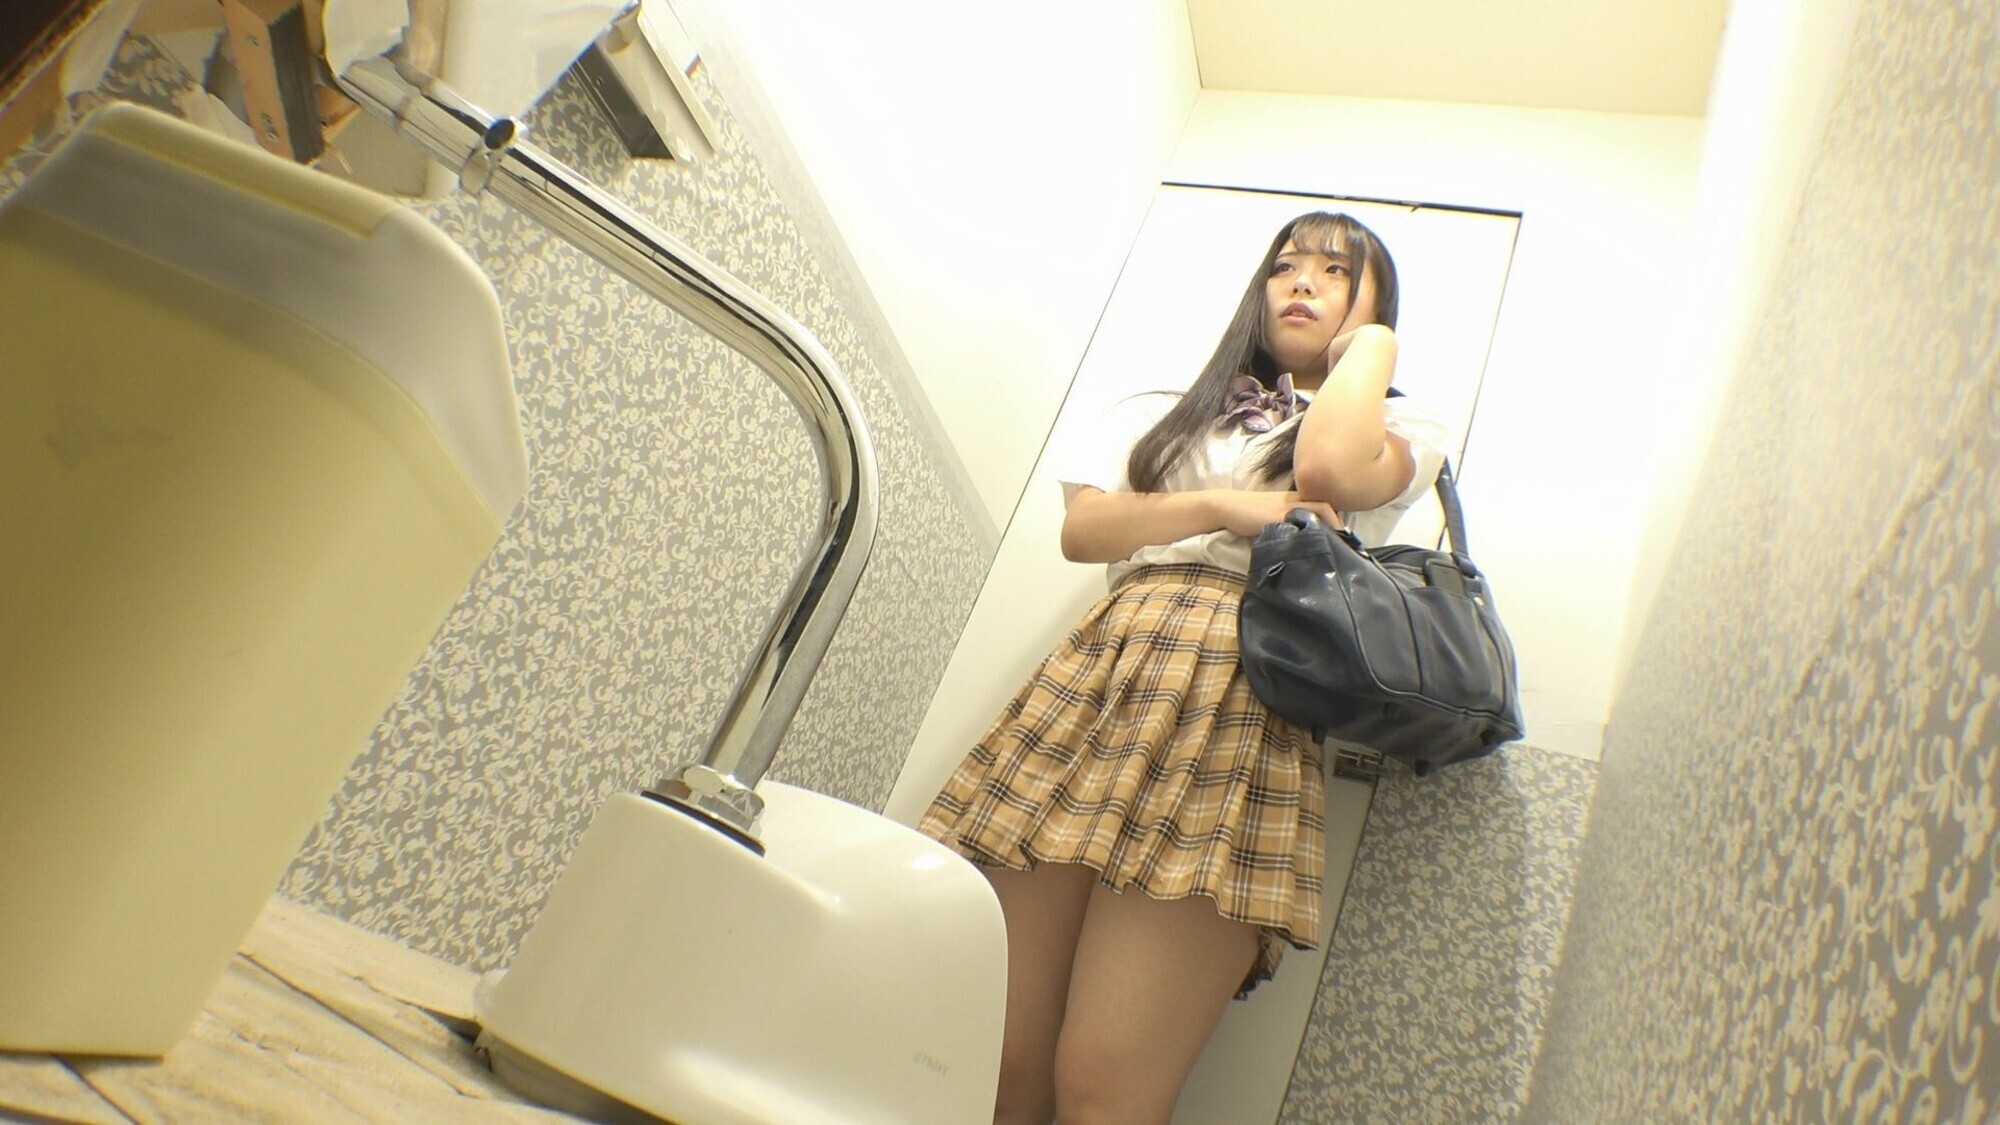 【流出映像】 女子〇生 公衆トイレ下校中オナニー 放尿・動画124分